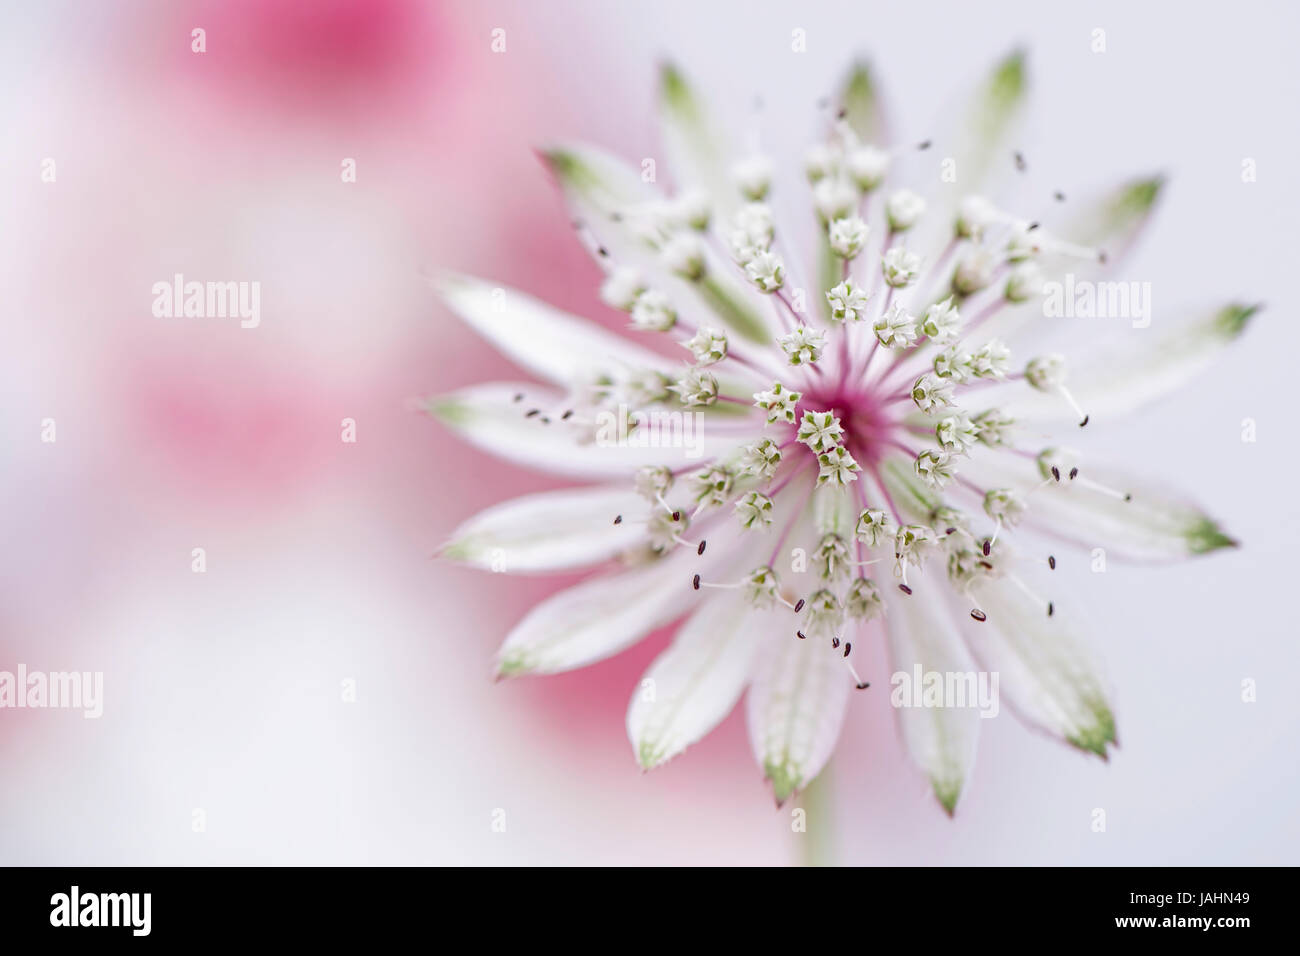 Nahaufnahme Bild der schönen Sommer blühenden Astrantia große Blume auch bekannt als Meisterwurz. Stockfoto